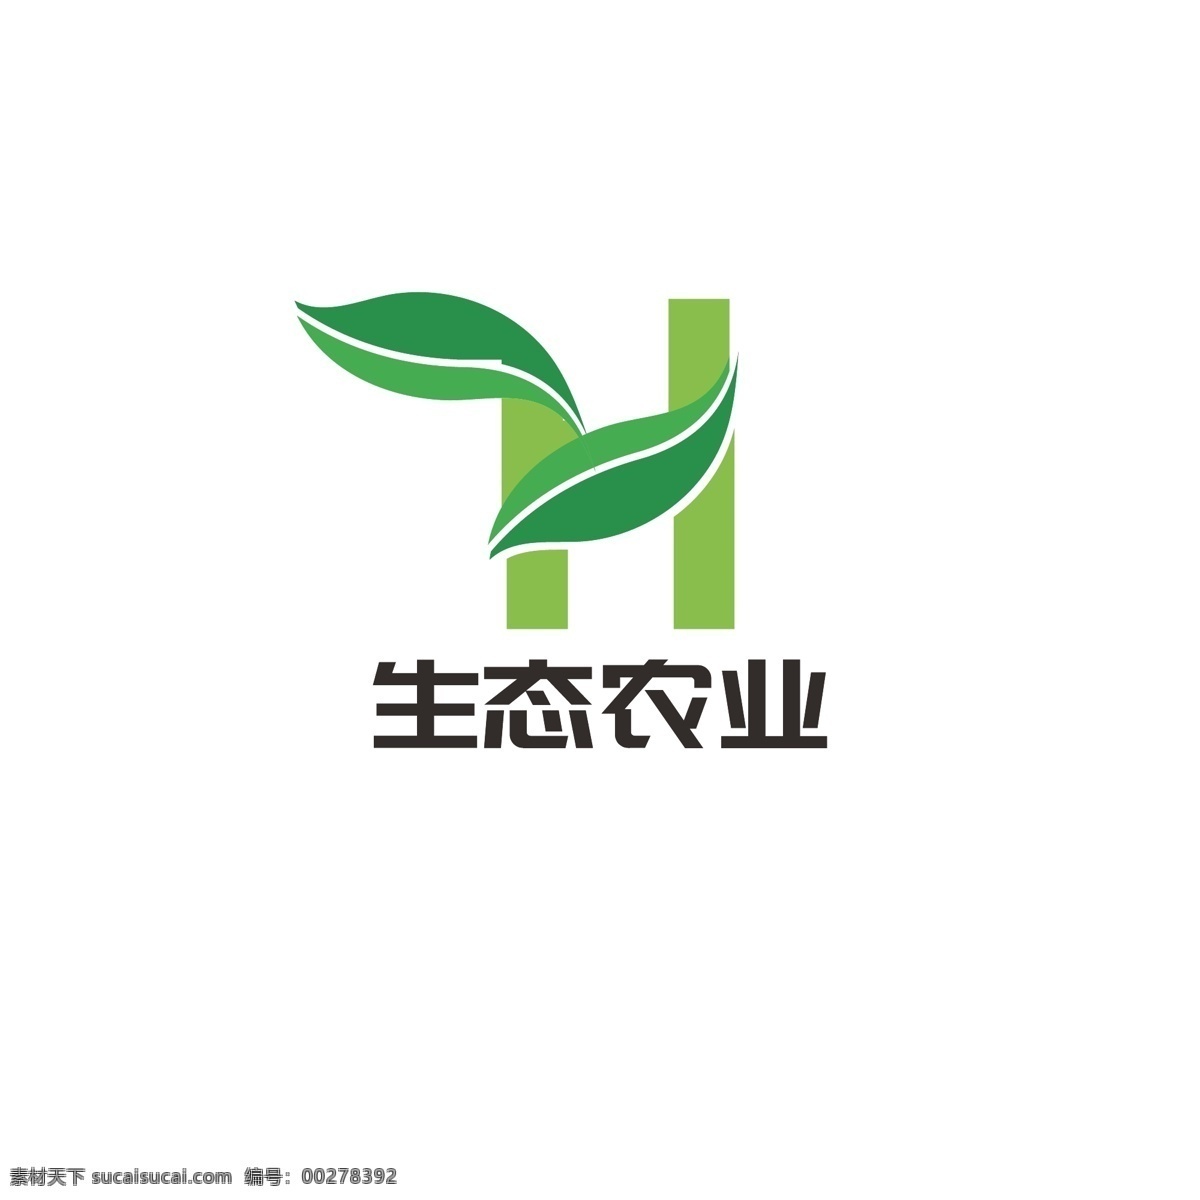 生态农业 logo 叶子 树叶 科技 农业 健康 字母h 生态 农产 农产品